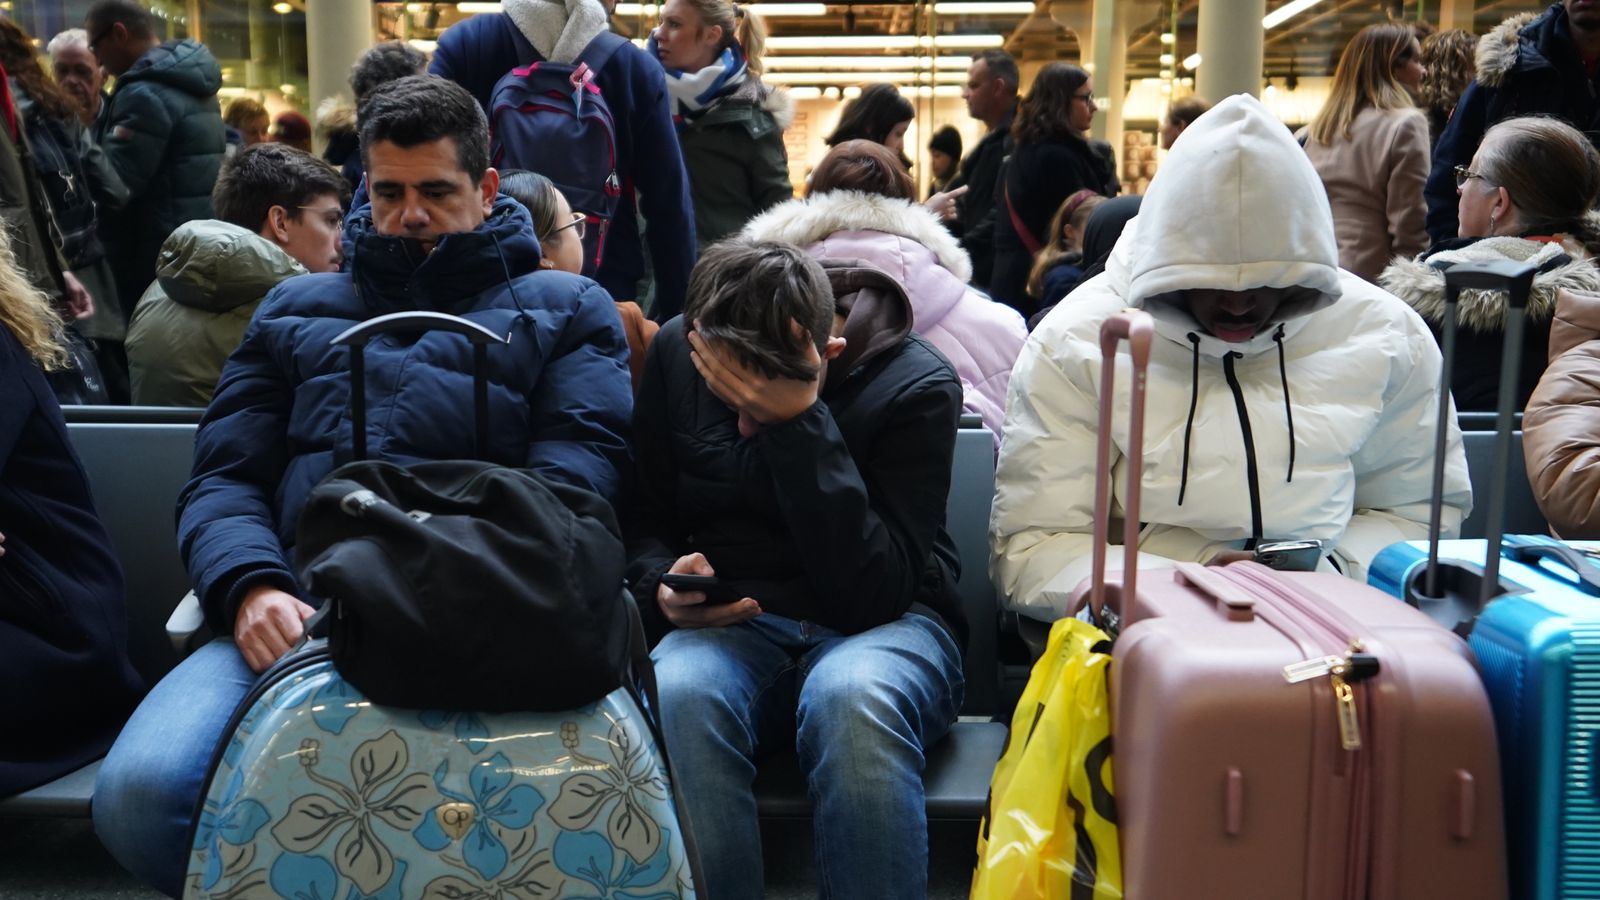 Eurostar предупреждава за повече закъснения, тъй като влаковете се възобновяват - докато други железопътни фирми също прогнозират „големи прекъсвания“